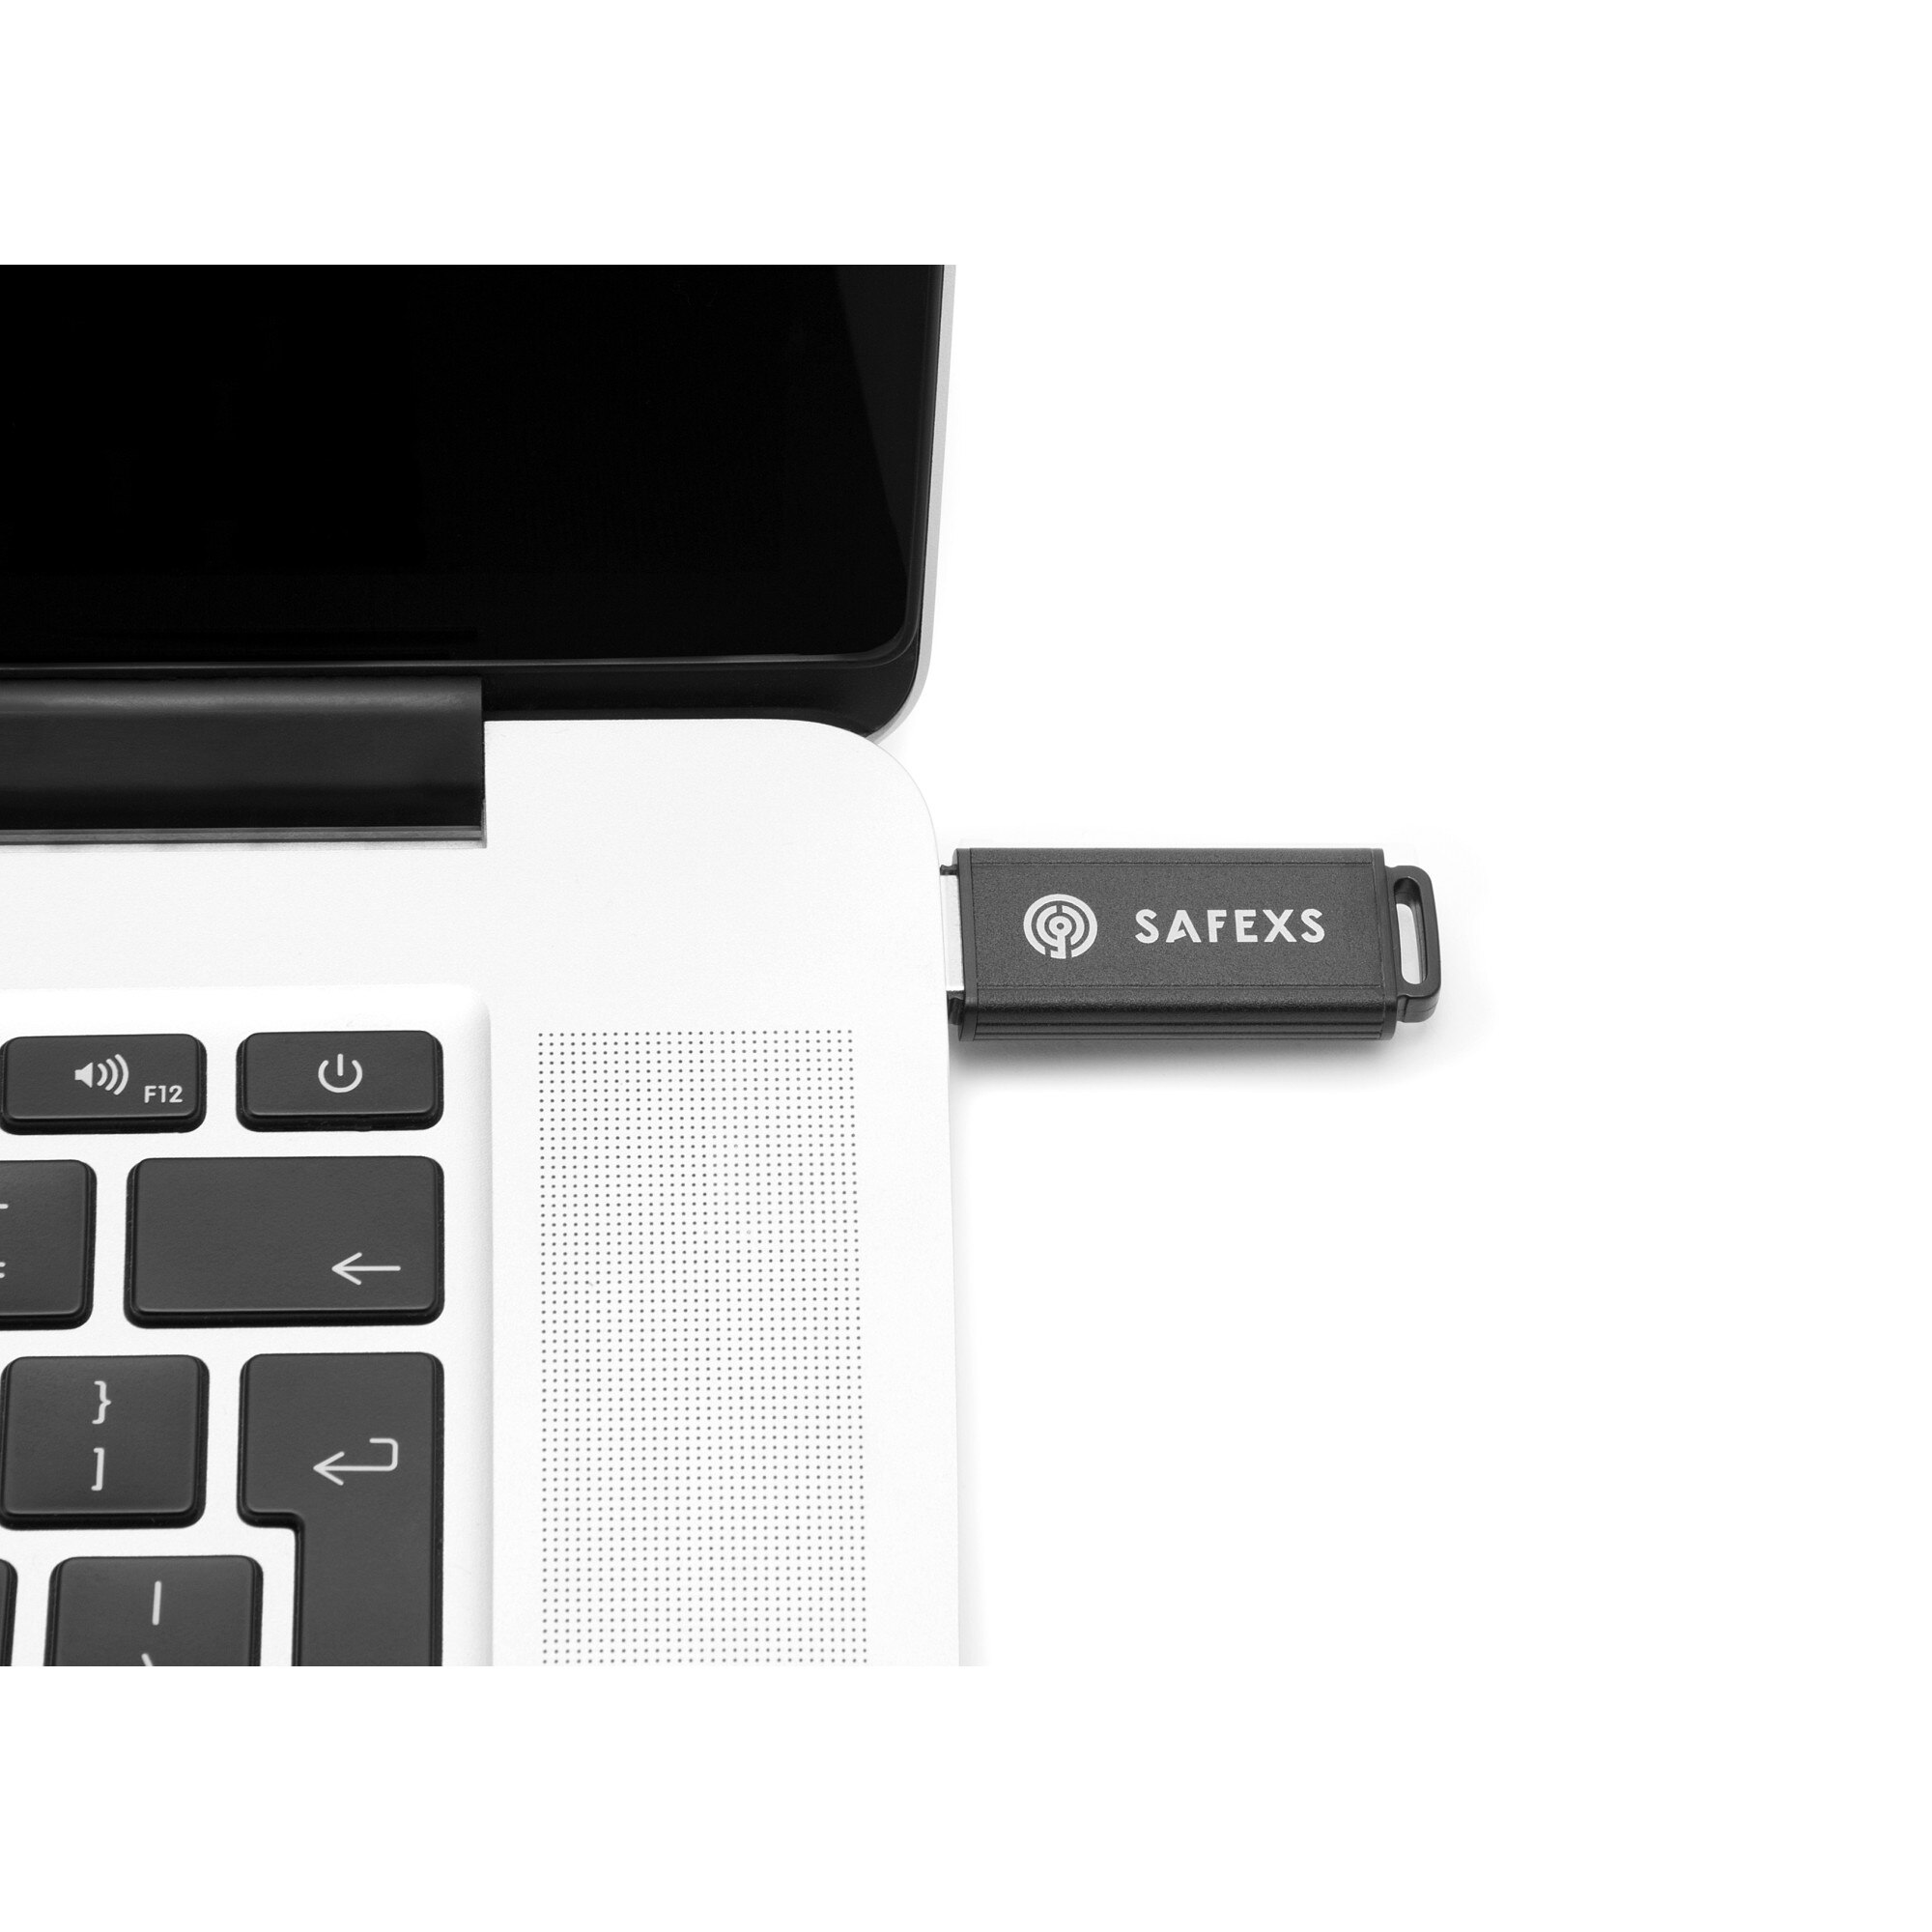 SafeXs Protector 3.0 16Go clé USB3 cryptée durcie